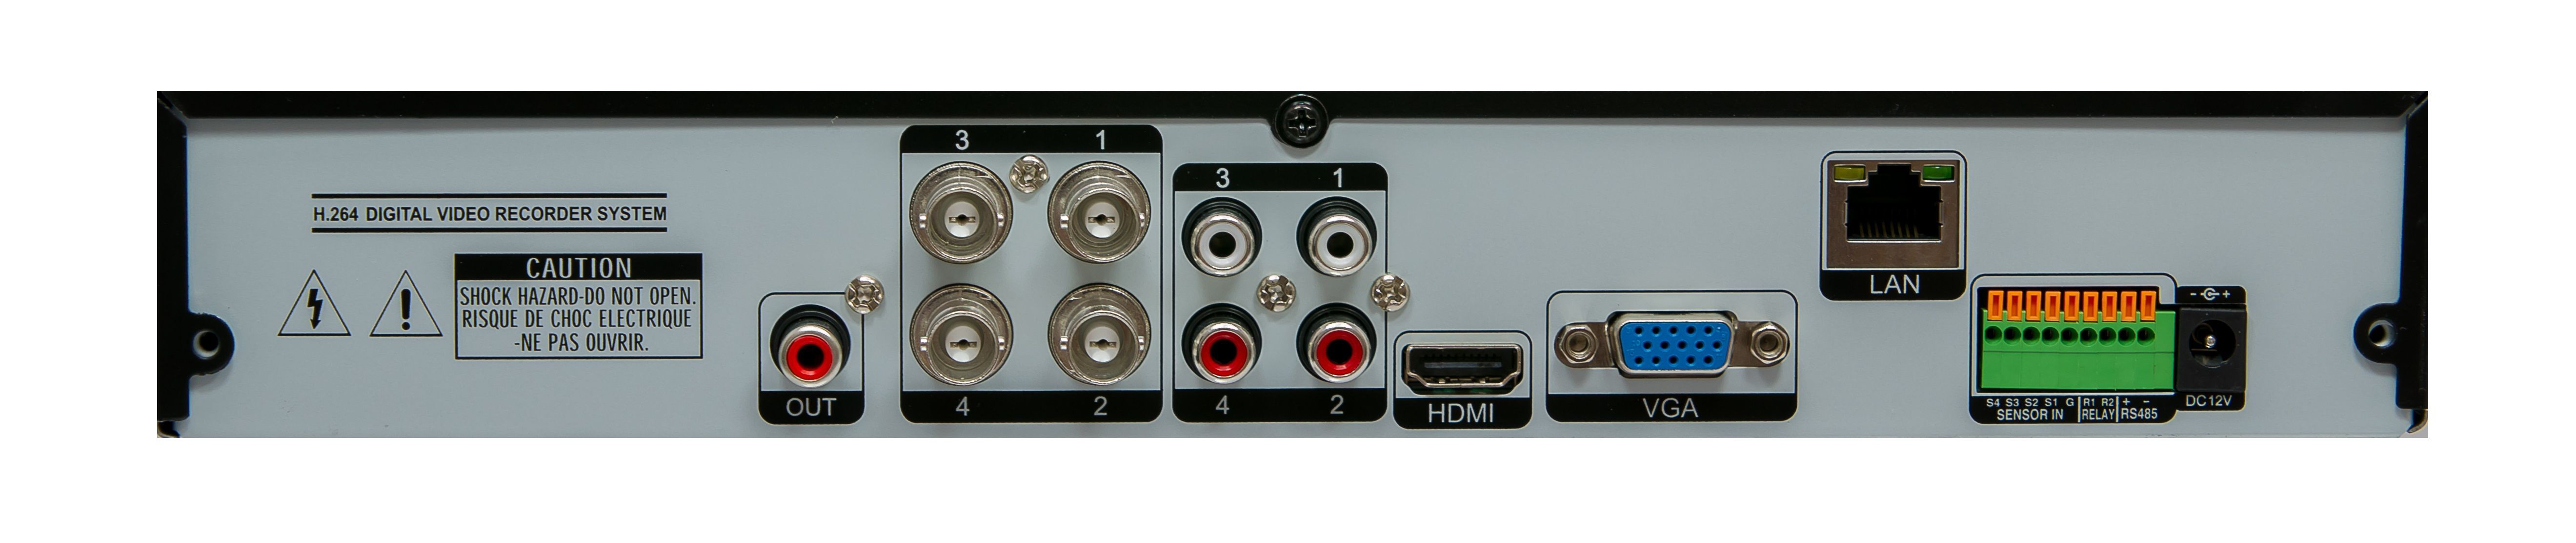 ANLT16M 4v1 DVR/NVR H.265